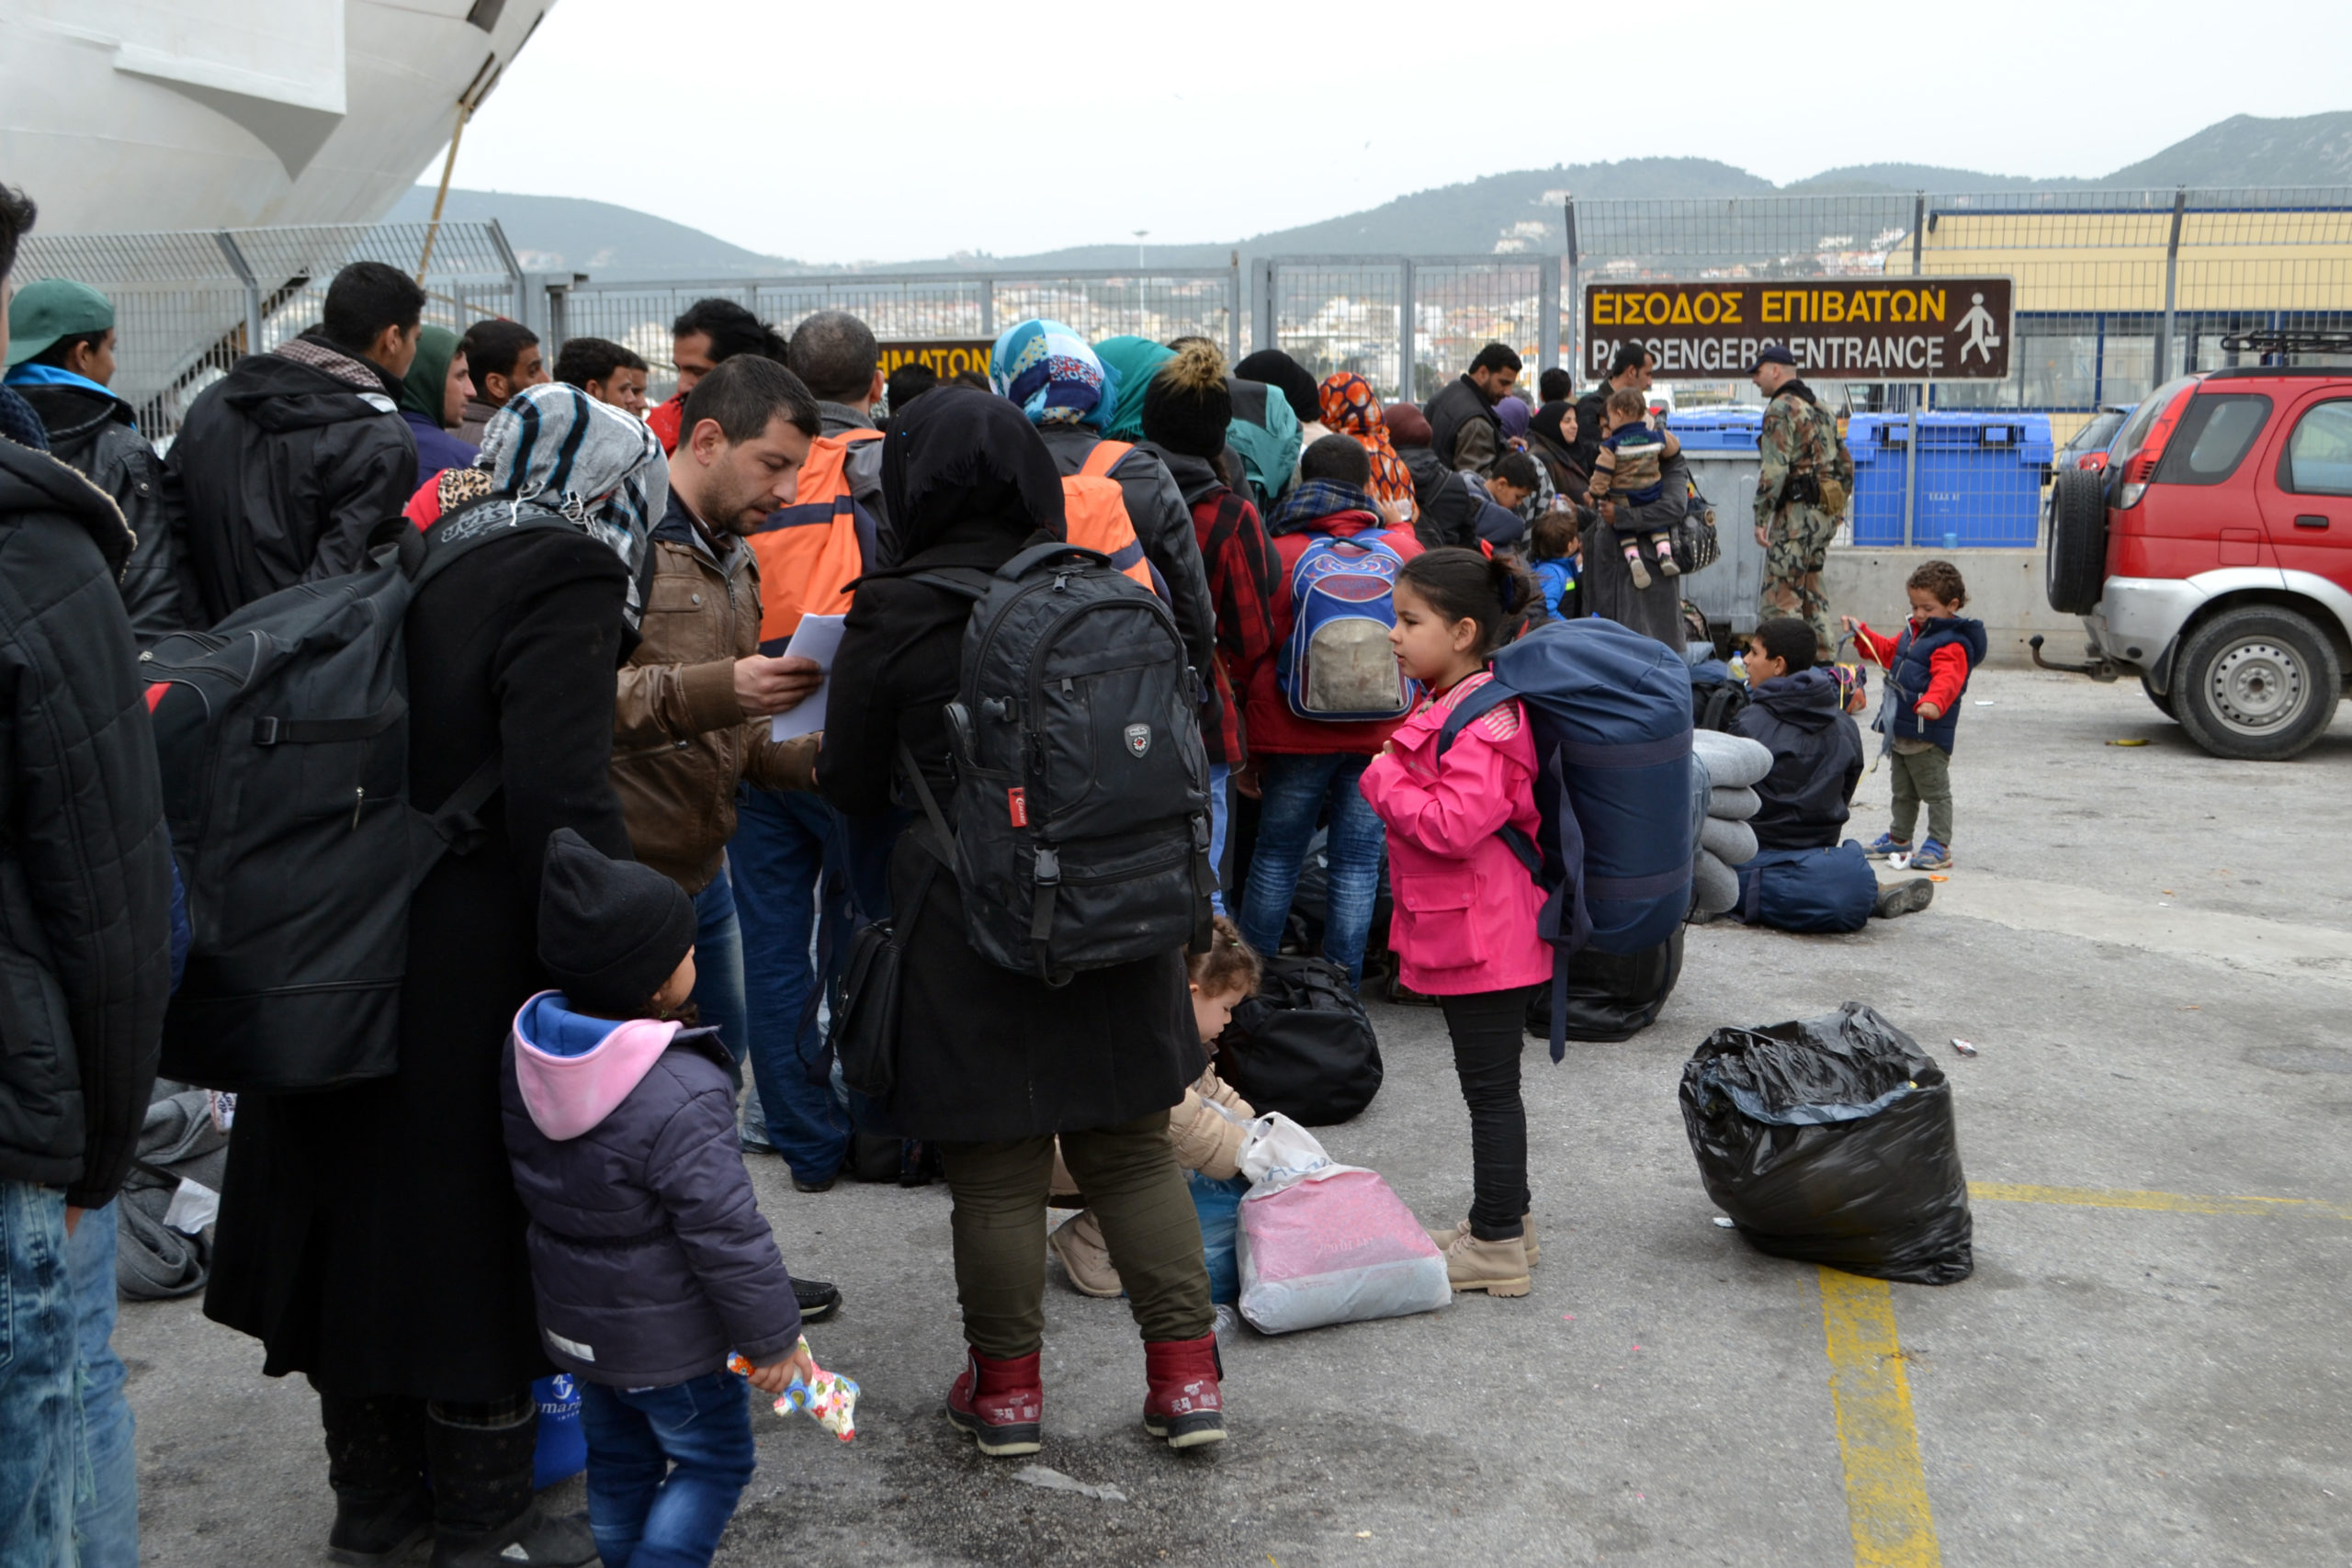 Σύσκεψη στον Πειραιά με αίτημα να κατευθύνονται και σε άλλα λιμάνια οι πρόσφυγες